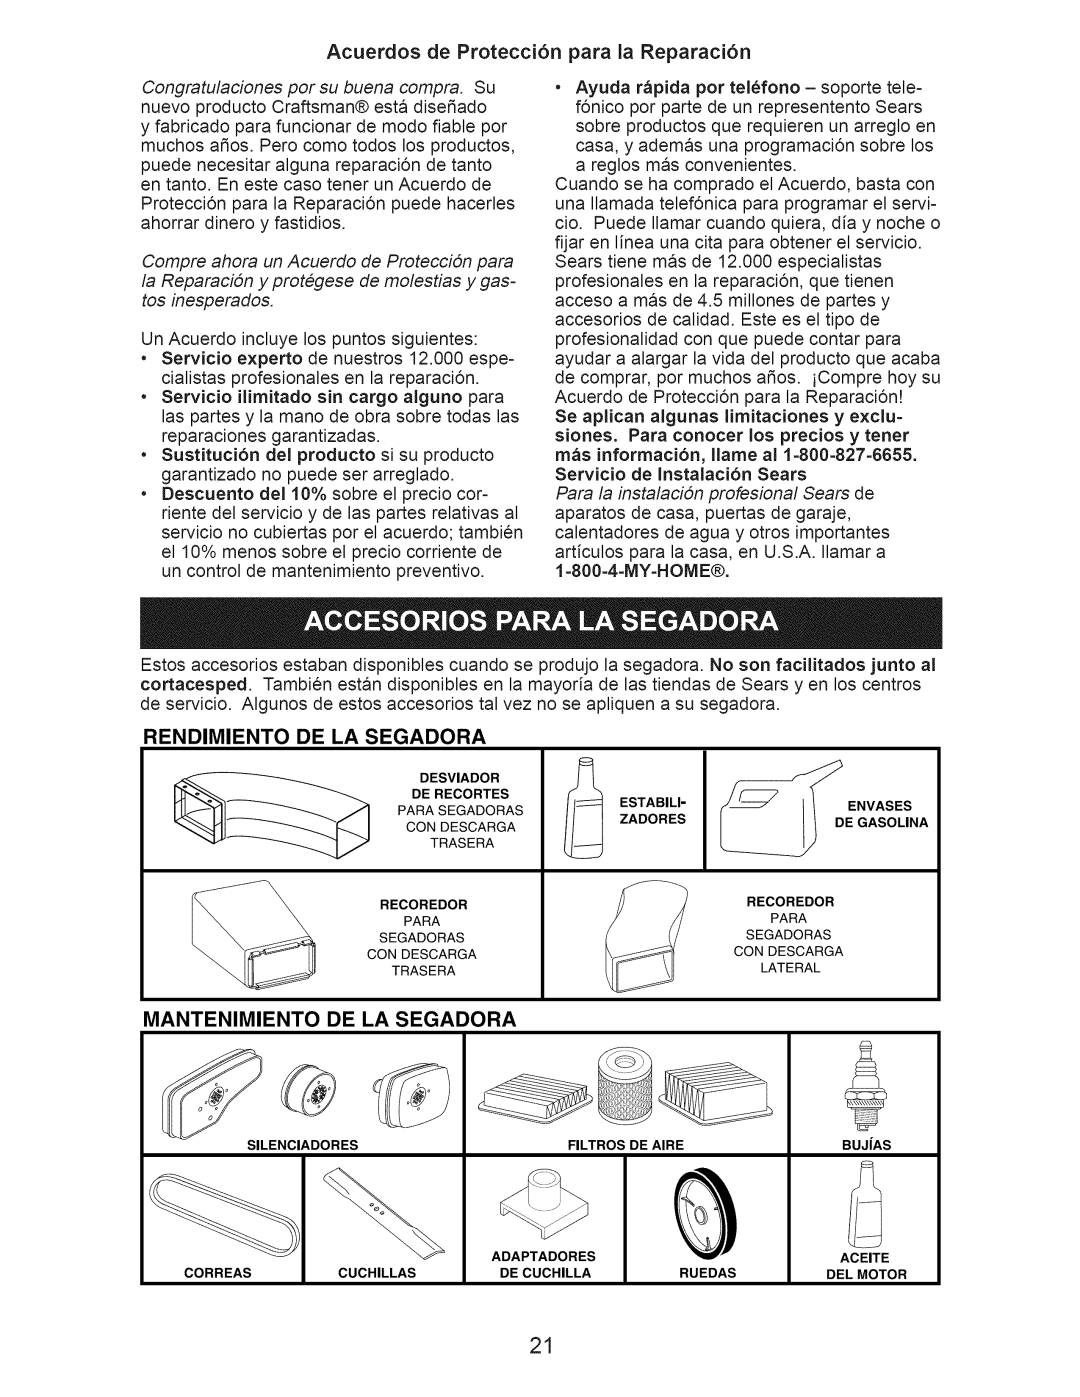 Craftsman 917.389062 owner manual Acuerdos de Protecci6n para la Reparaci6n, Rendimiento, De La Segadora, Mantenimiento 